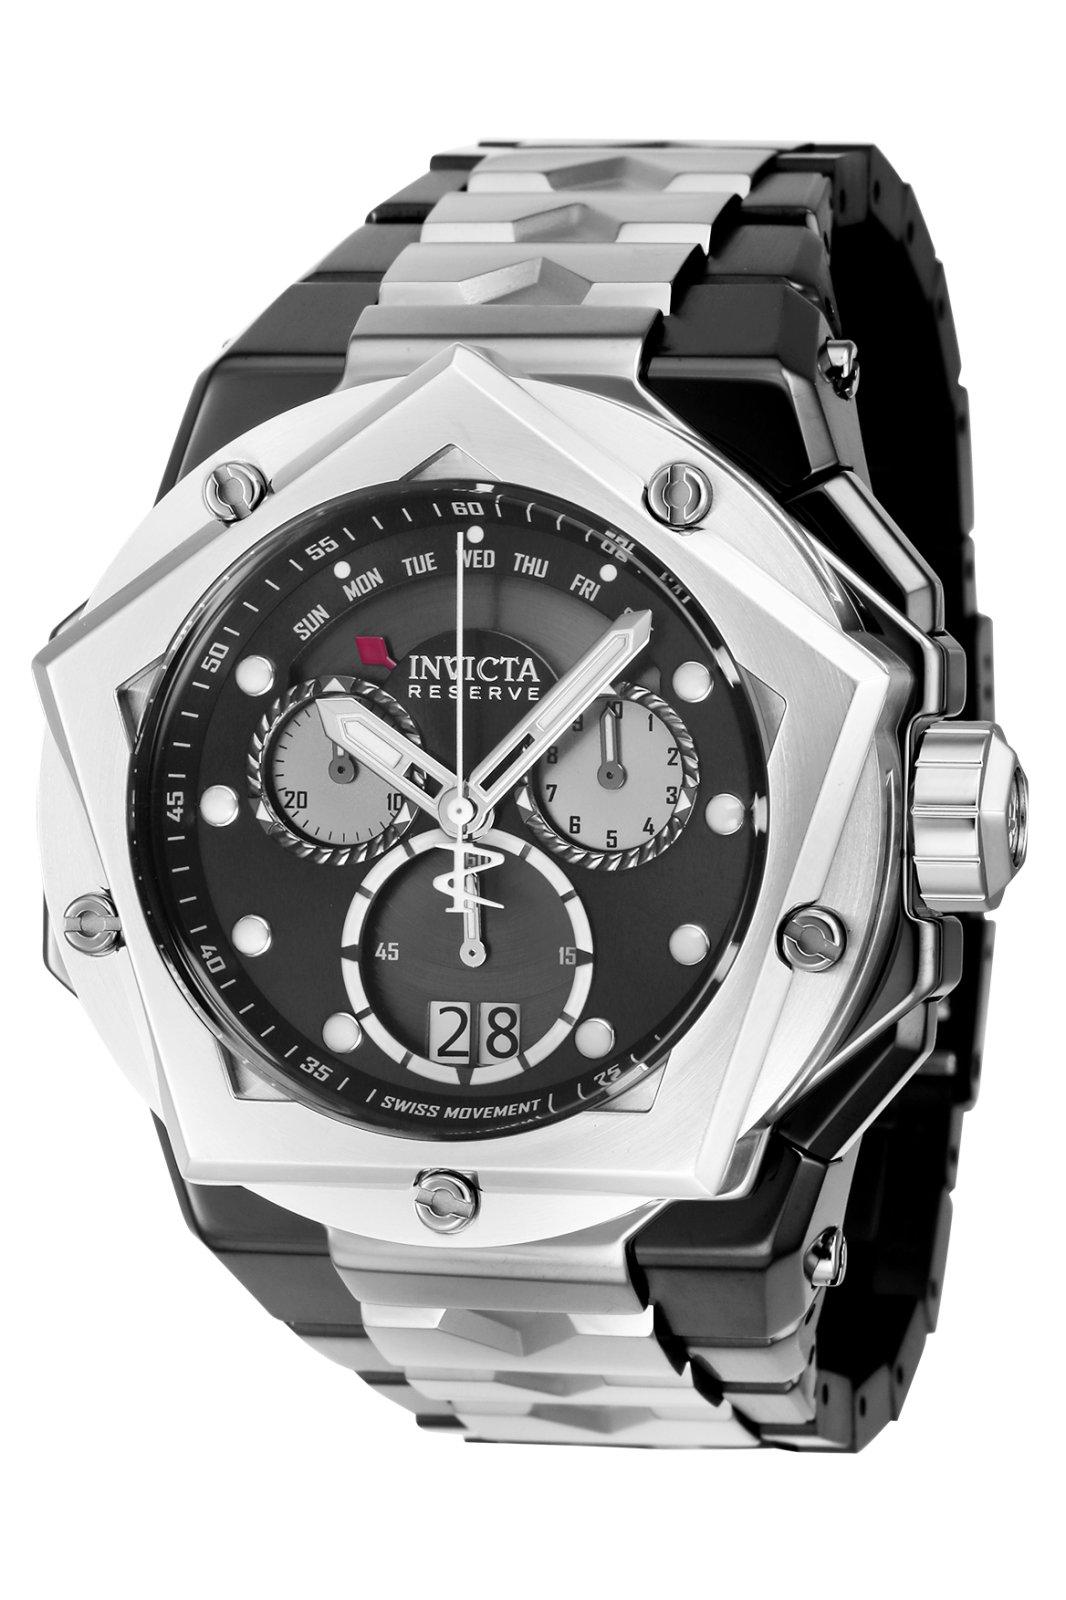 Invicta Helios 39261 Relógio de Homem Quartzo  - 54mm